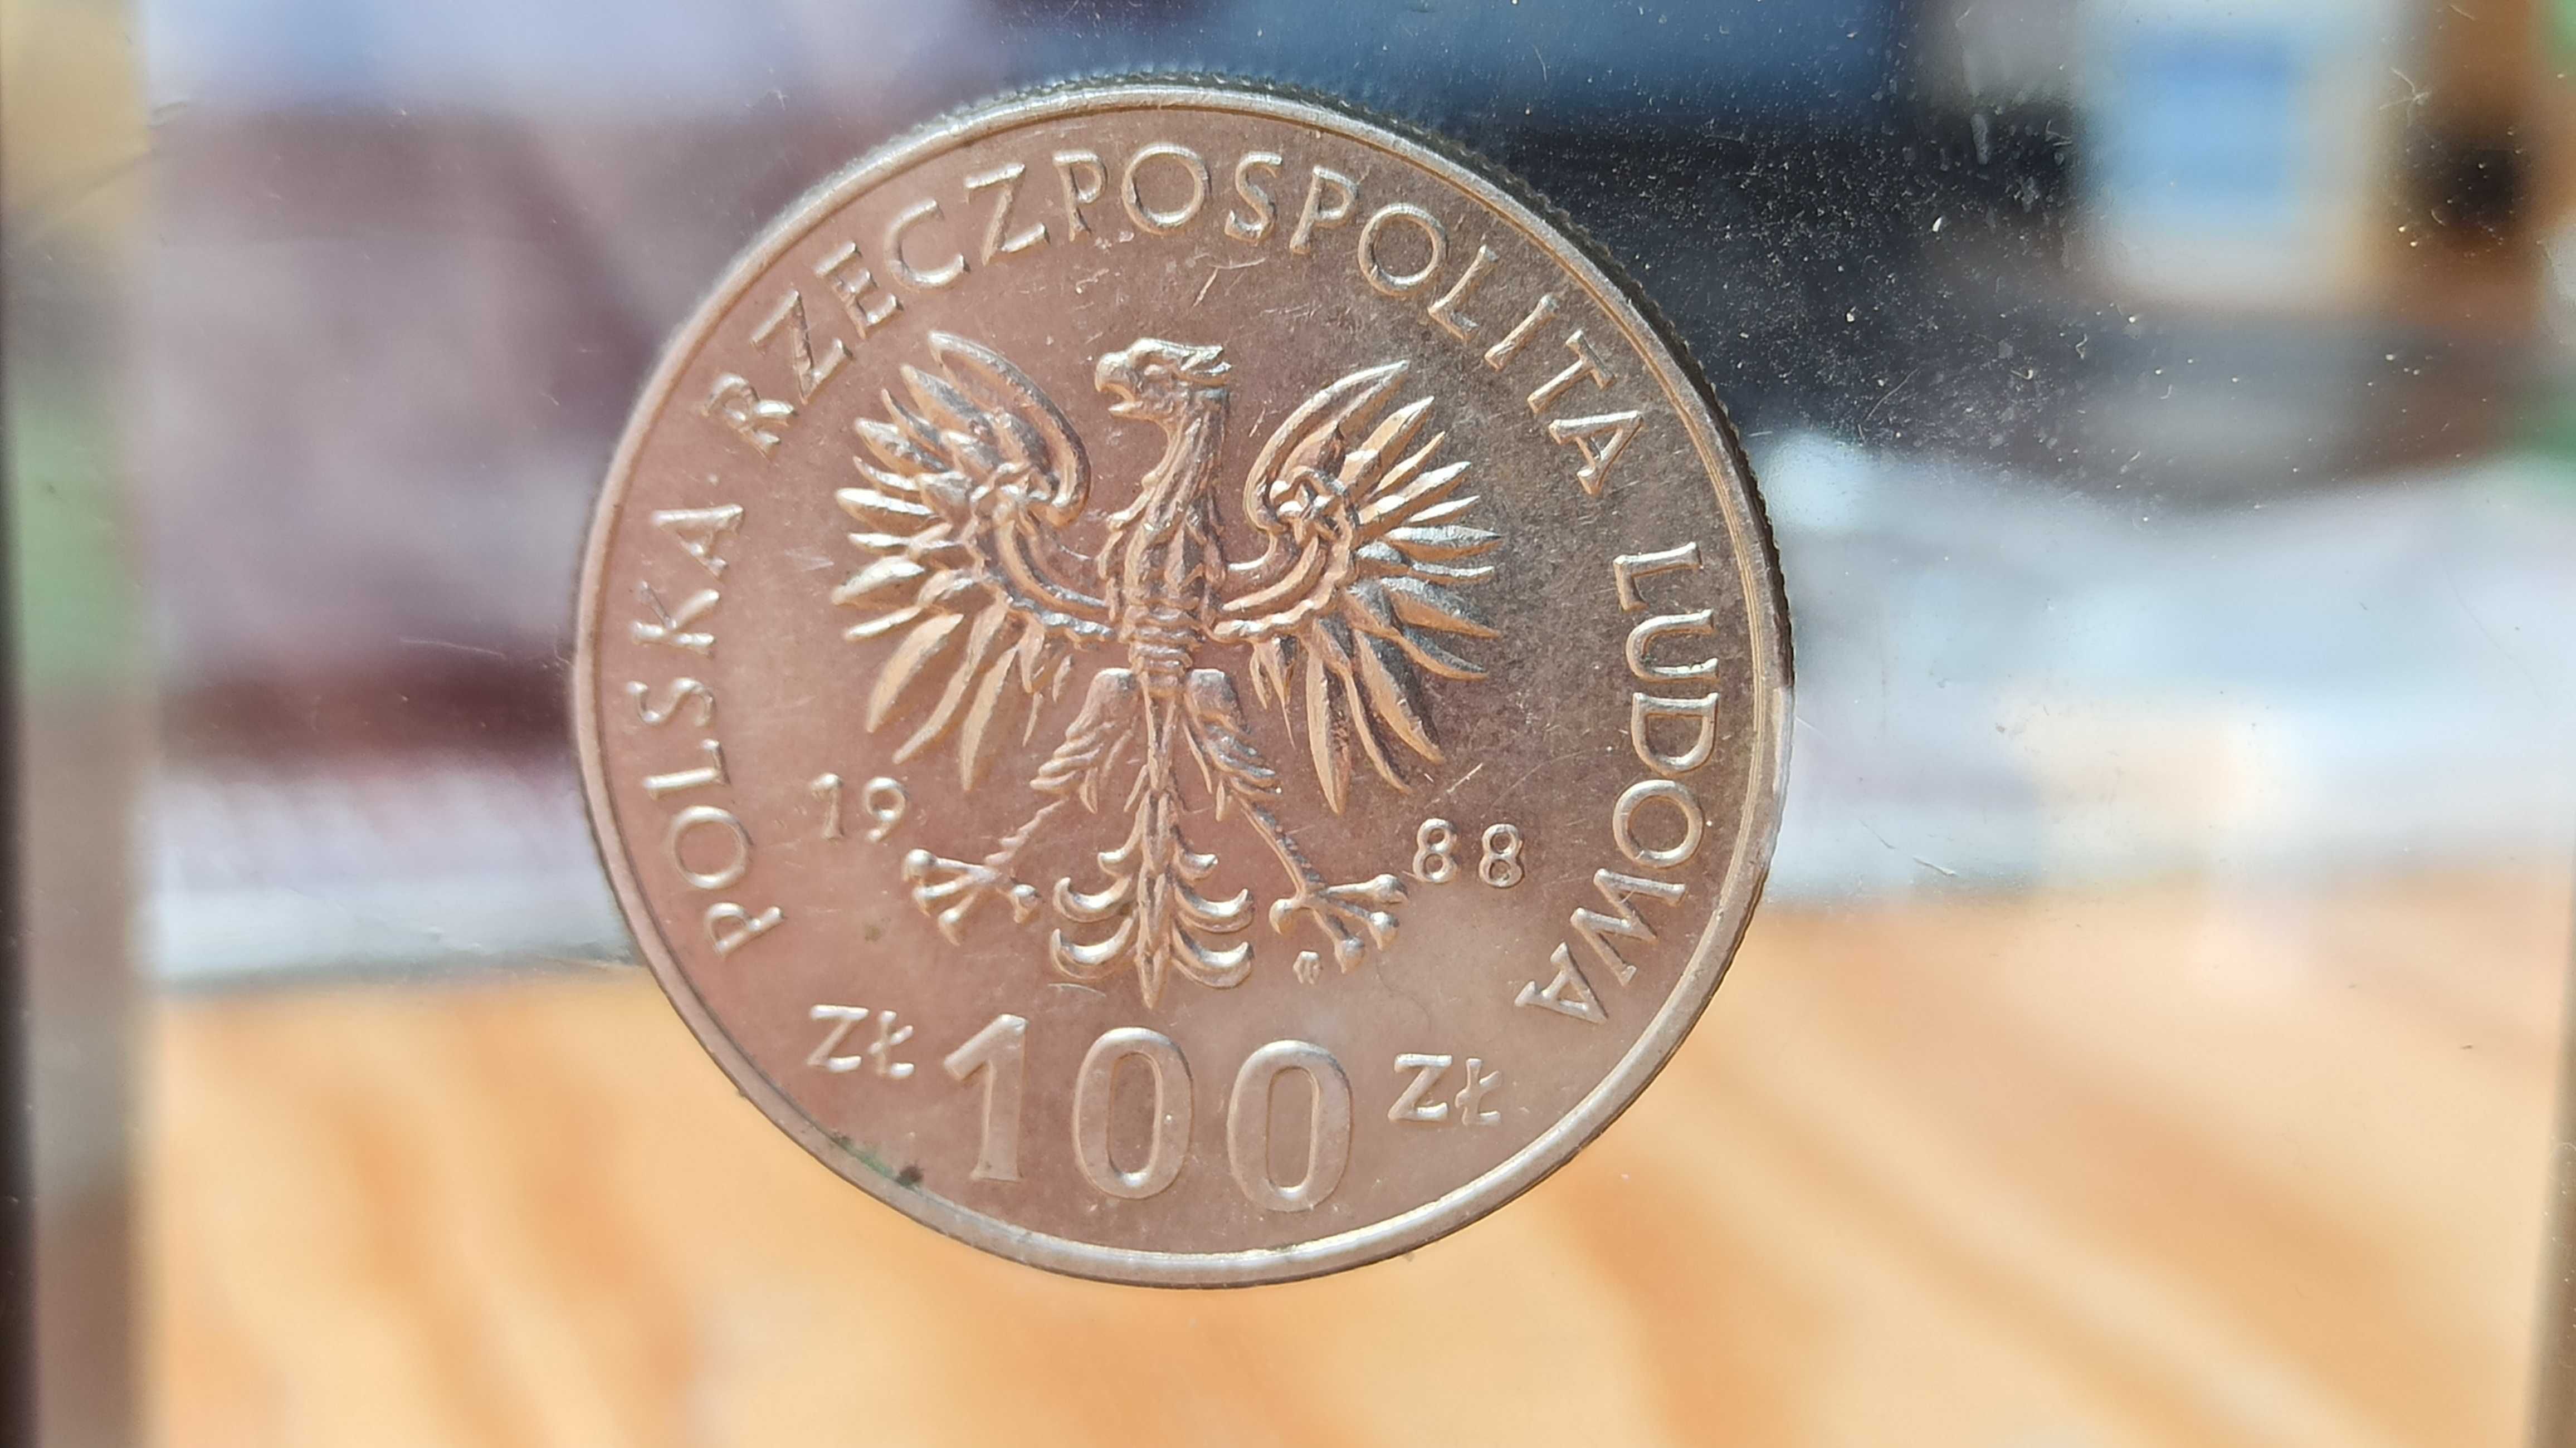 PRL, Moneta 100 złotych Jadwiga 1988r. / Destrukt / Brak inicjałów